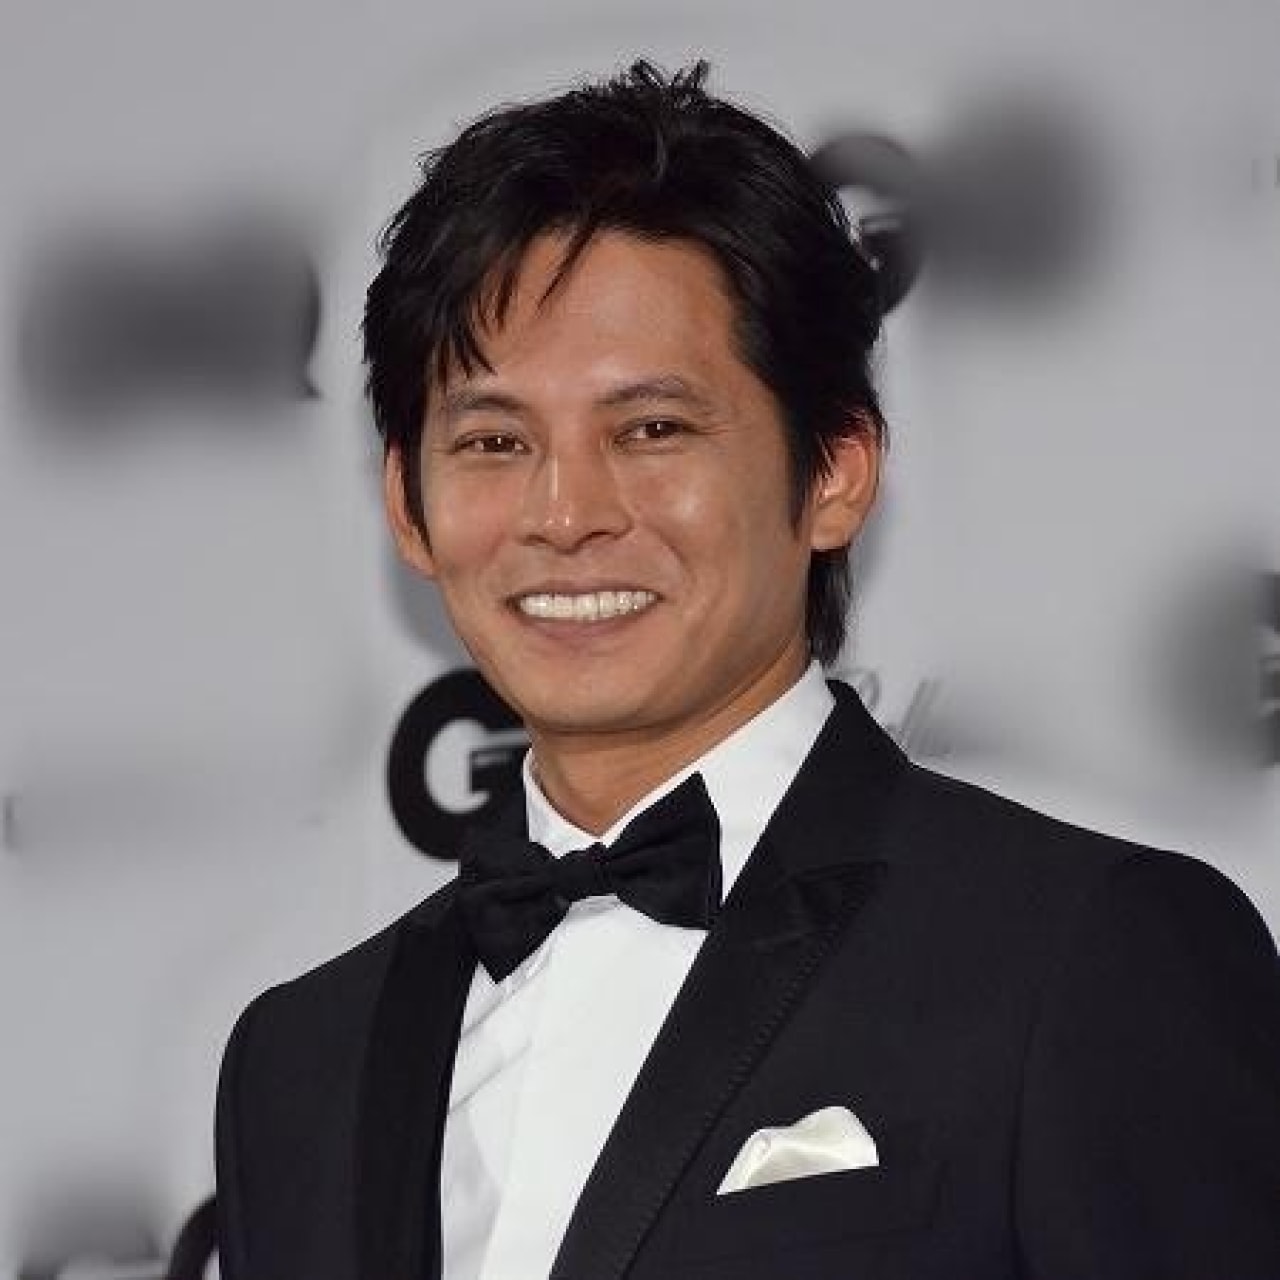 踊る大捜査線 復活の可能性 織田裕二主演 Suits2 の成功がカギか 年4月5日 エキサイトニュース